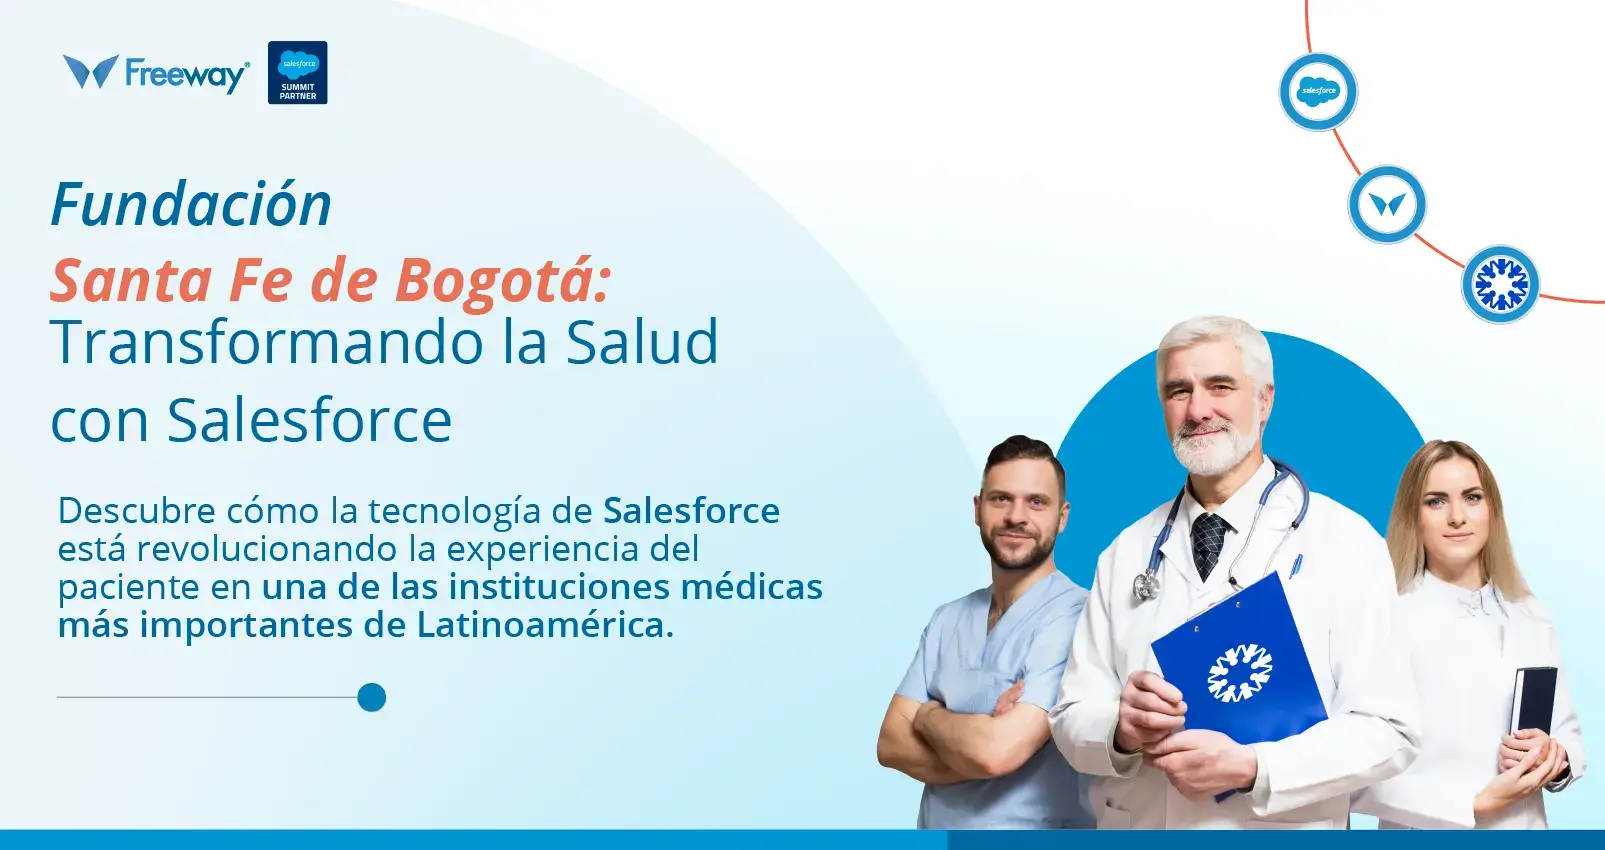 Fundación Santa Fe de Bogotá Transforma la Experiencia del Paciente con Salesforce